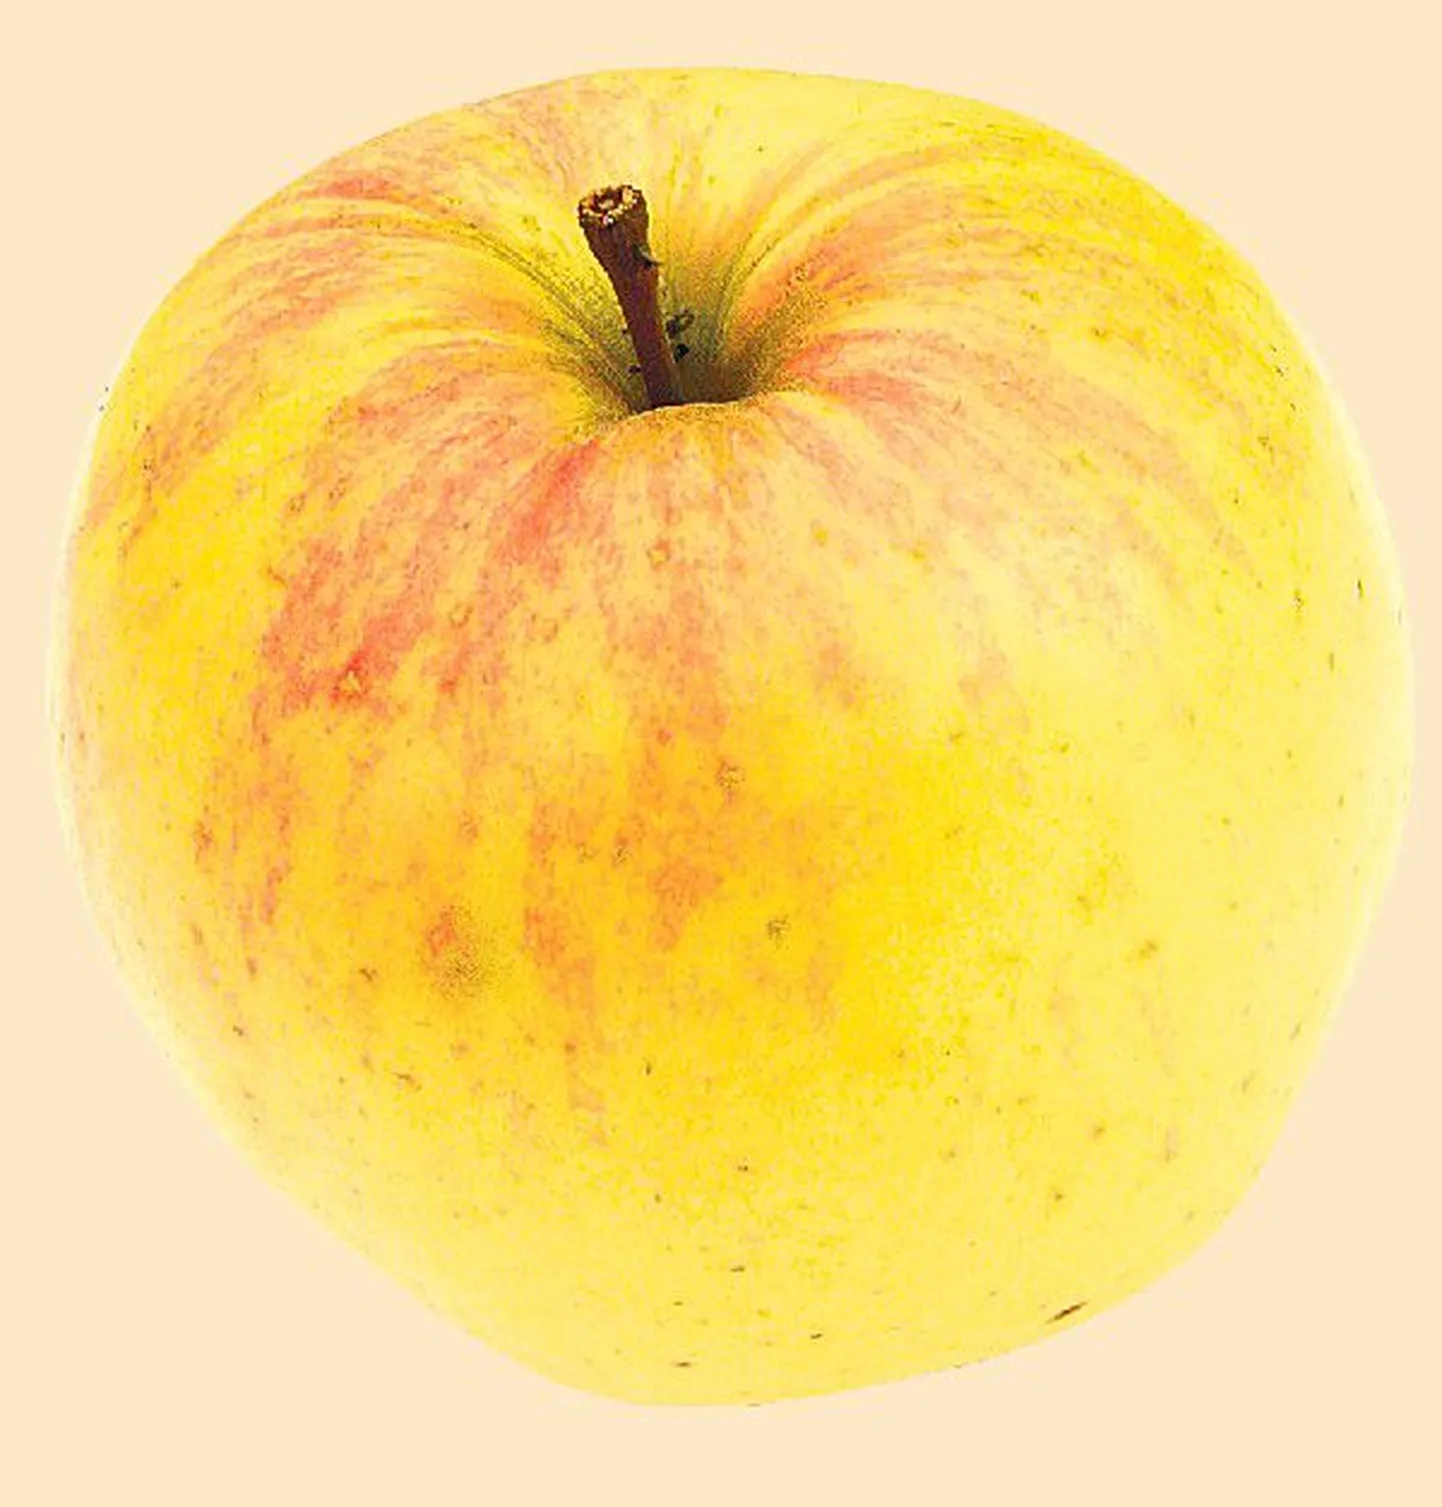 Яблоки всегда считались очень полезным для здоровья продуктом.